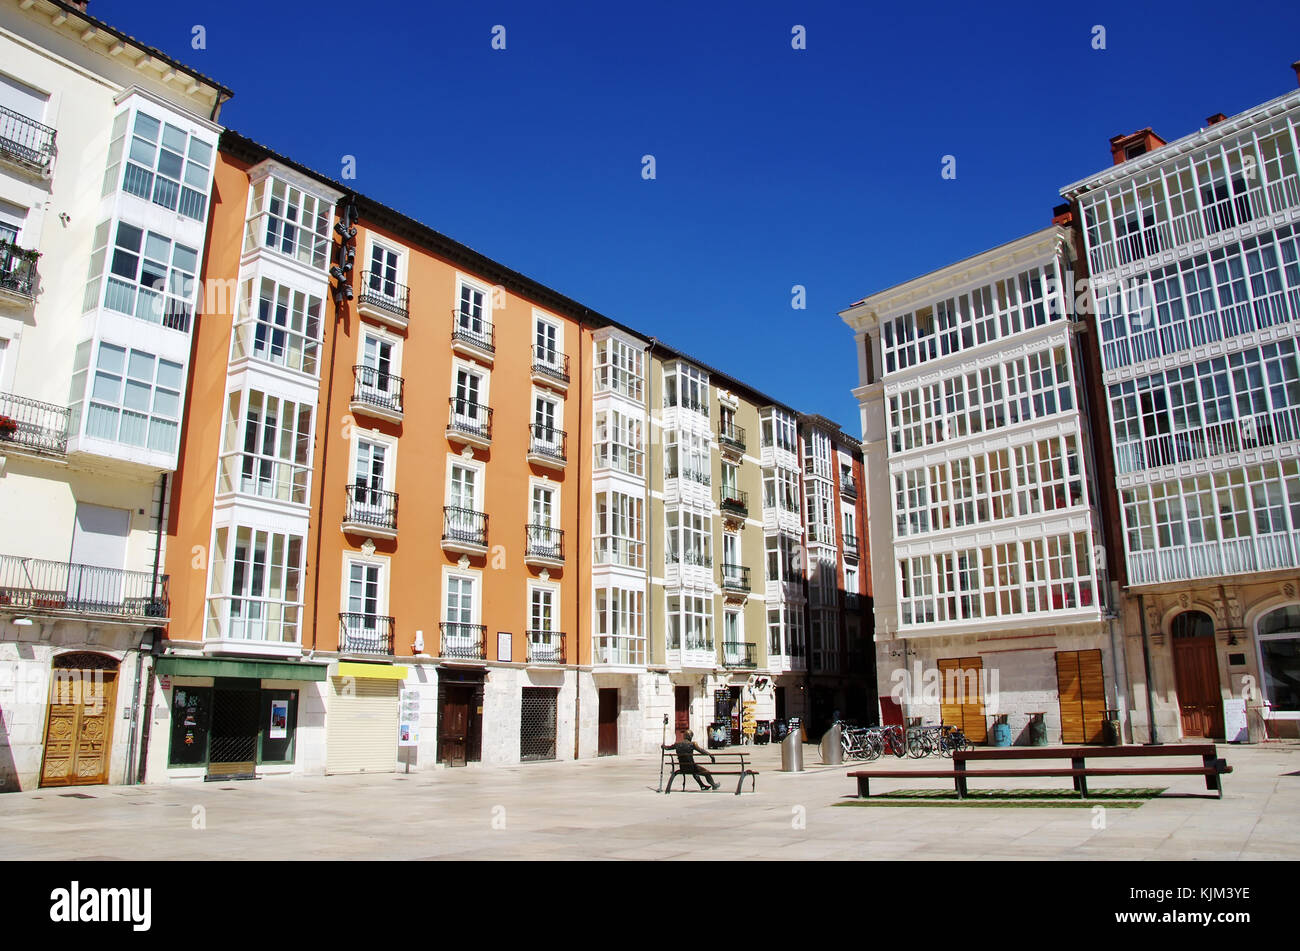 L'extérieur des bâtiments historiques, ofburgos carrés, Espagne Banque D'Images